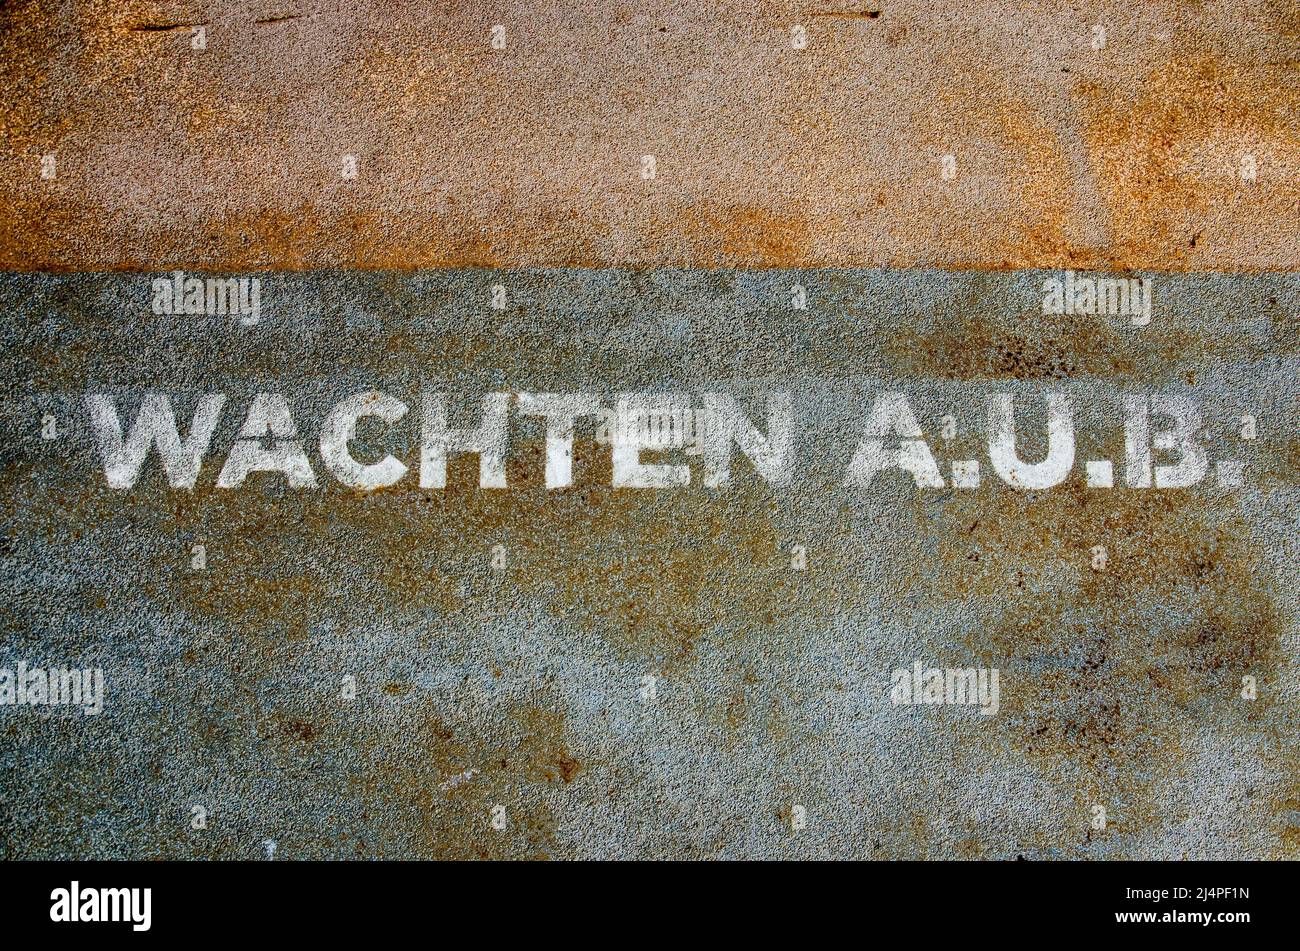 Las palabras holandesas 'wachten a. `b' (por favor espere) escritas en blanco sobre una capa superior rugosa de un pontón de acero Foto de stock